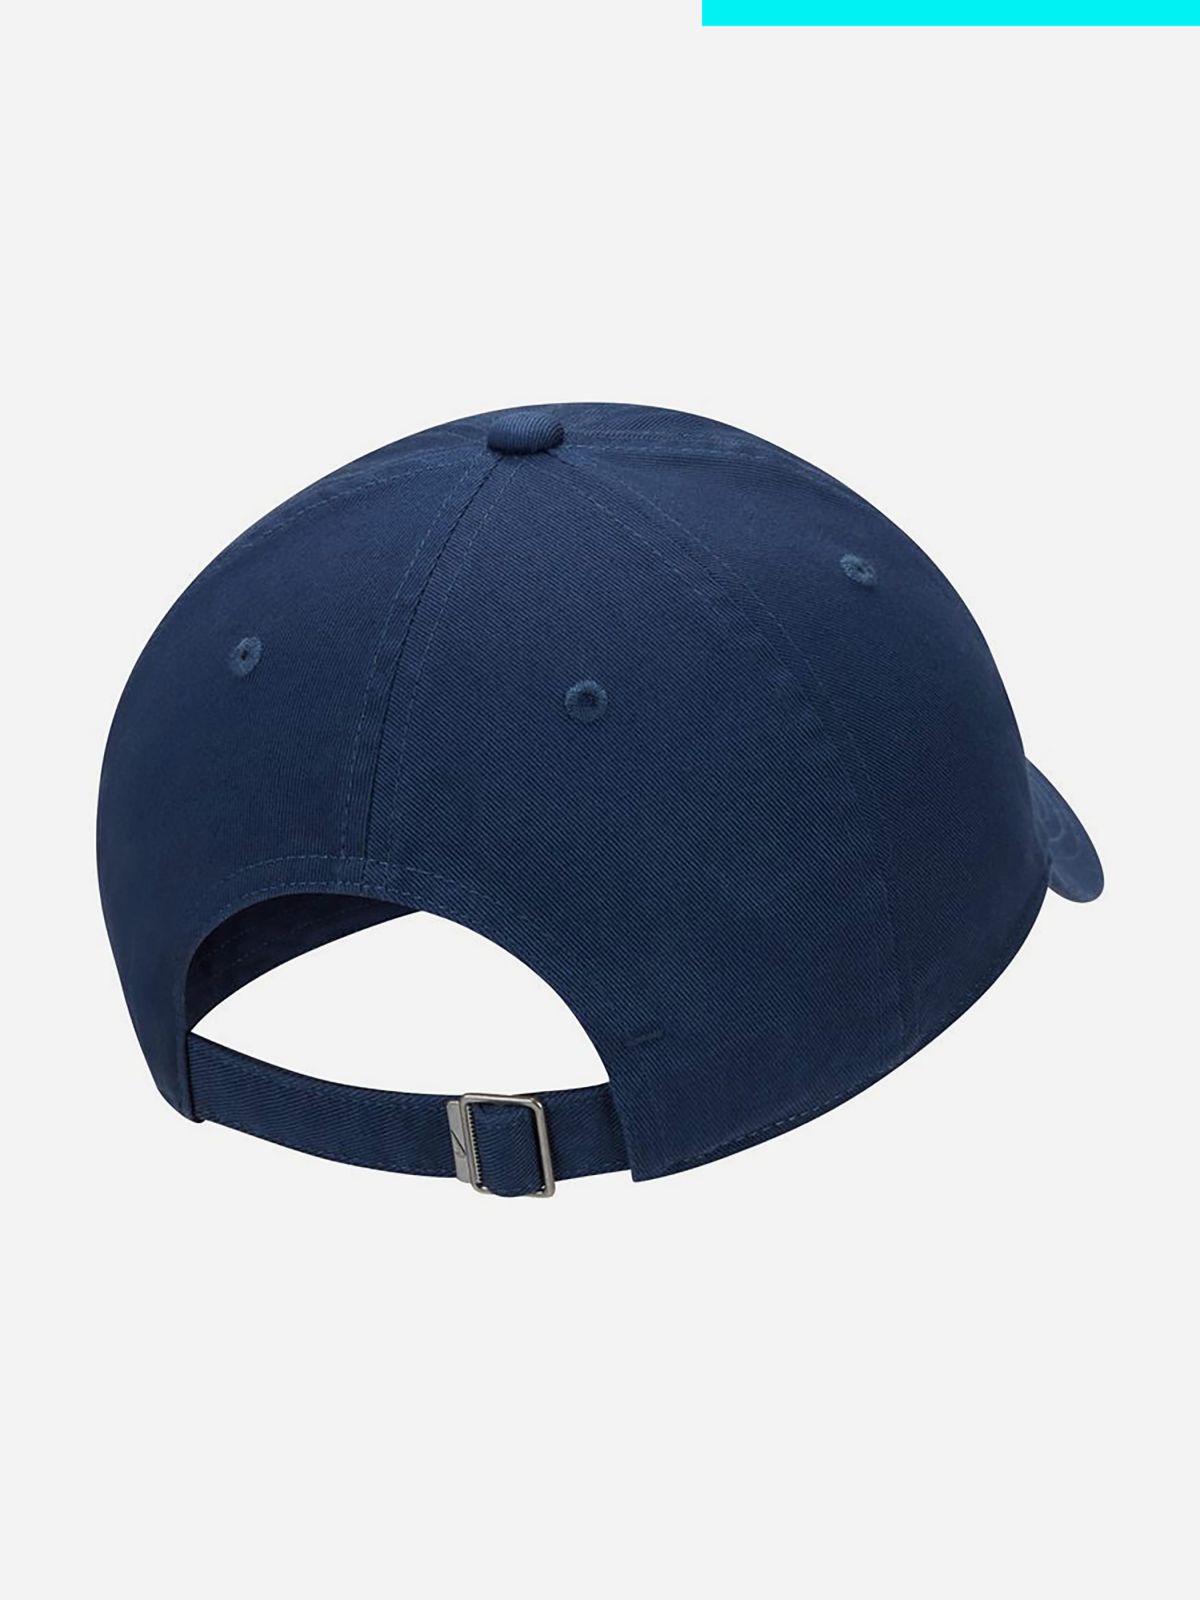  כובע מצחייה עם לוגו / גברים של NIKE